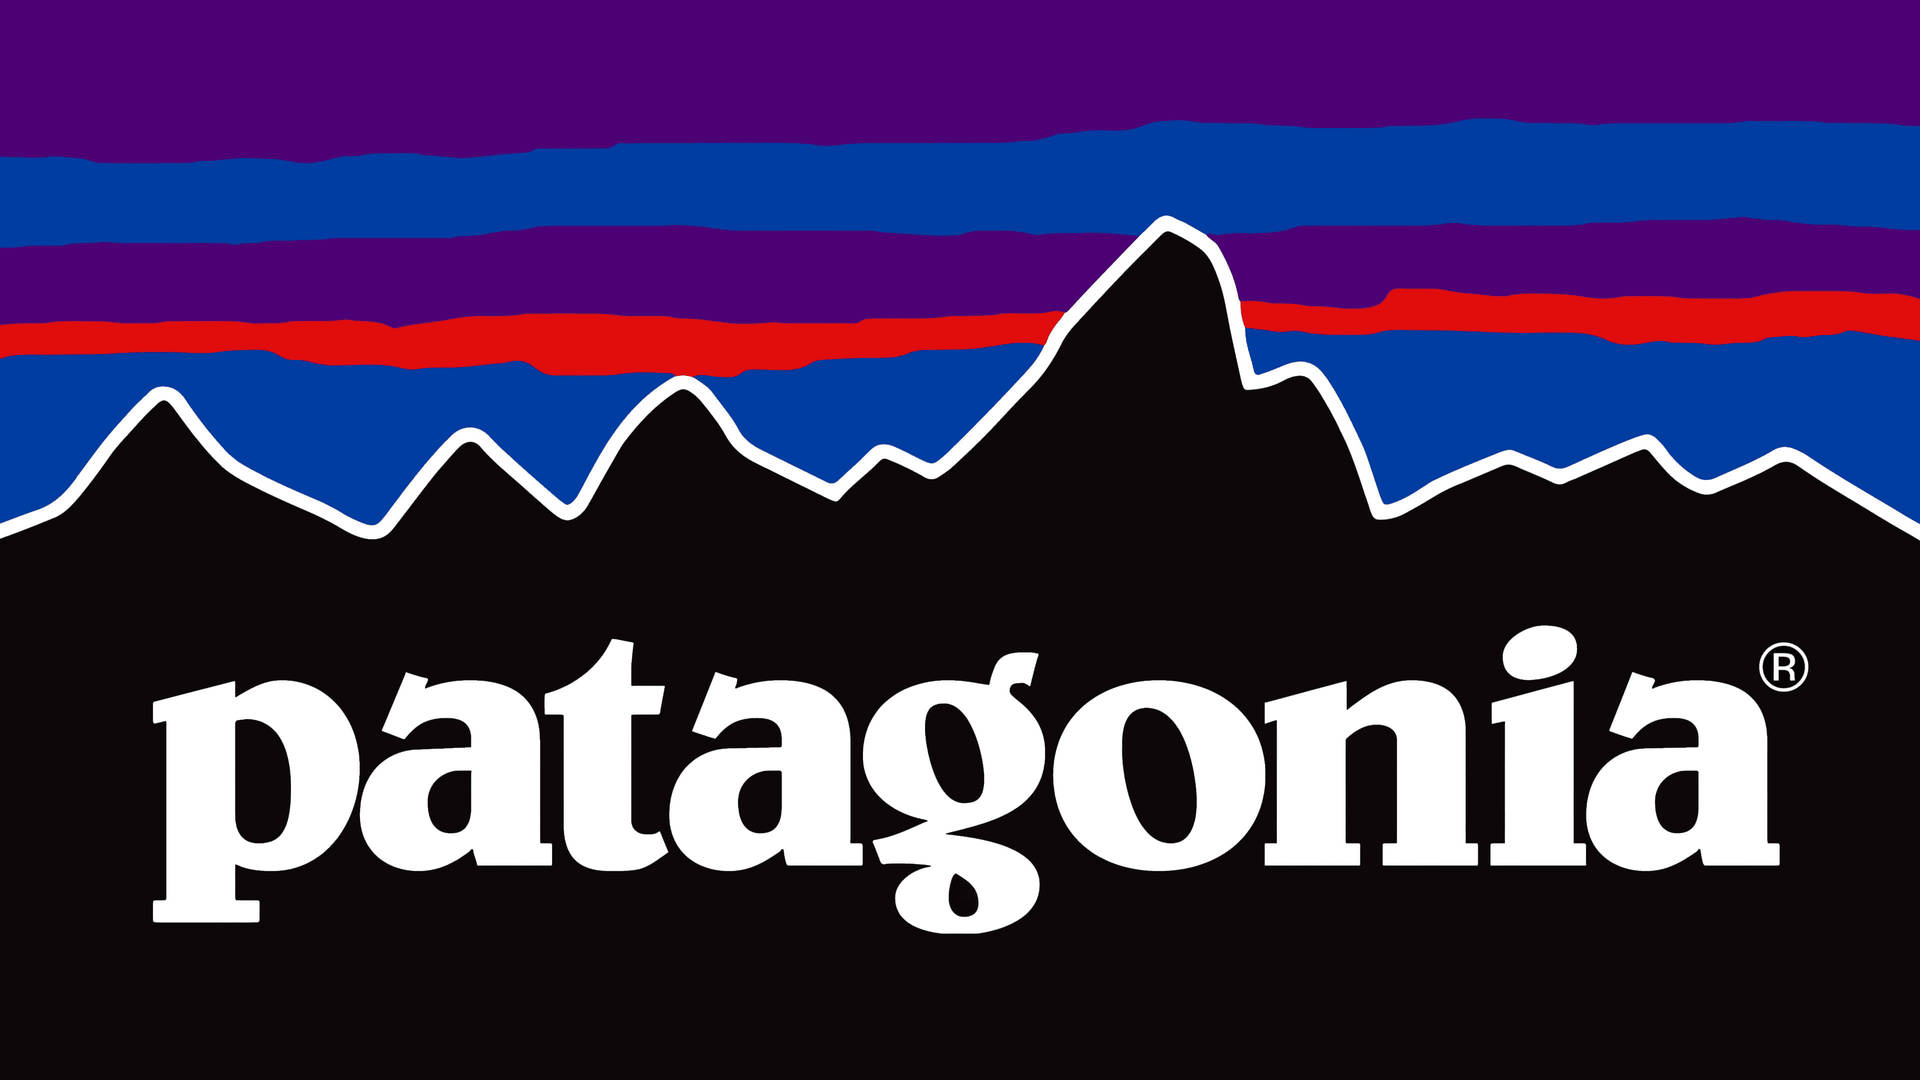 Patagonialila Logo Wallpaper